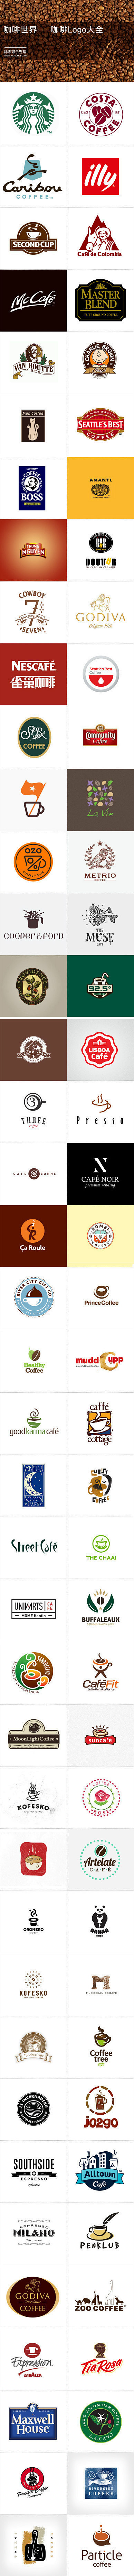 咖啡世界 咖啡logo大全